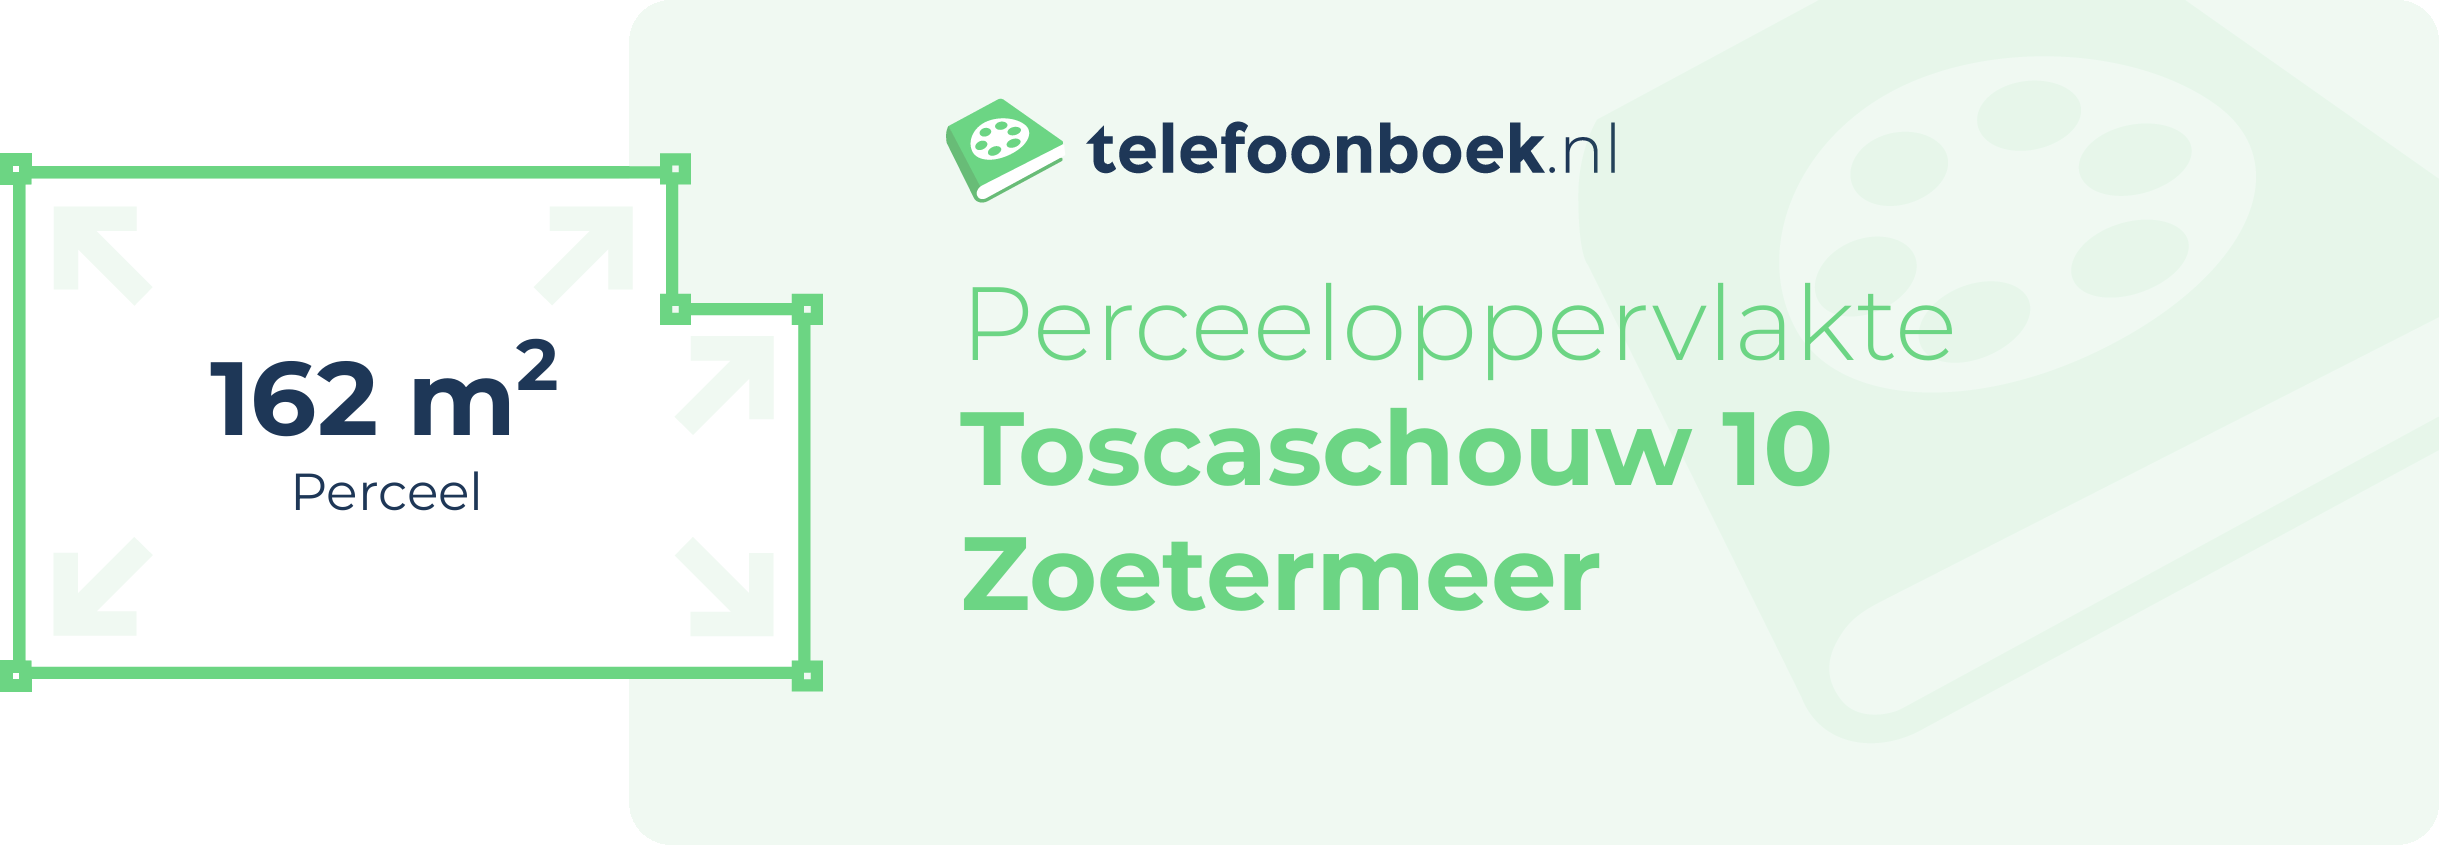 Perceeloppervlakte Toscaschouw 10 Zoetermeer